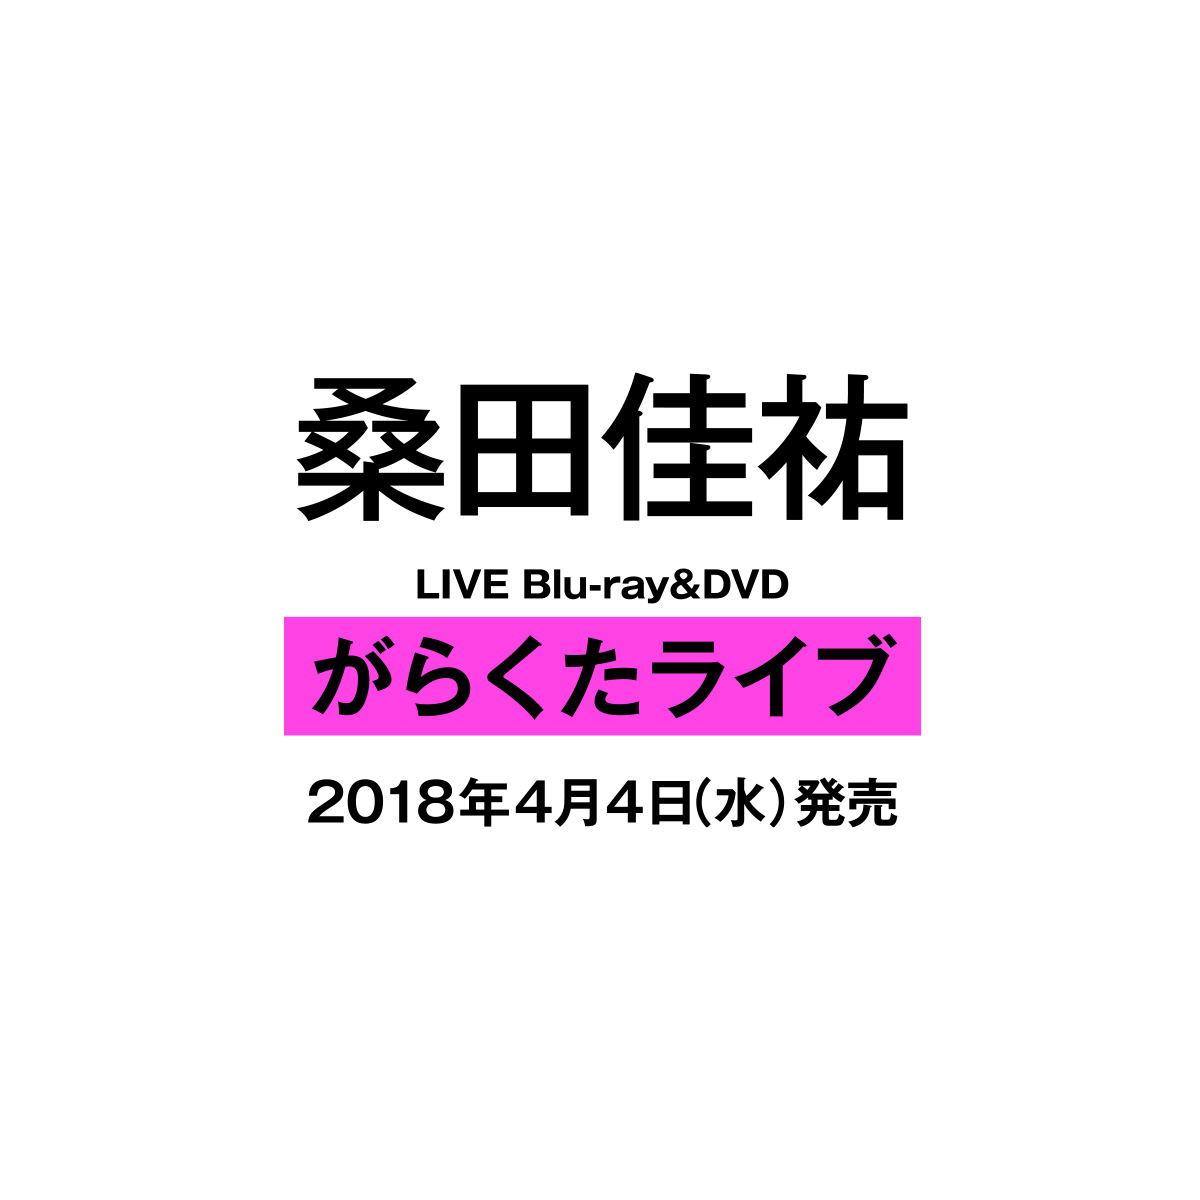 桑田佳祐 LIVE Blu-ray＆DVD「がらくたライブ」スペシャルサイト